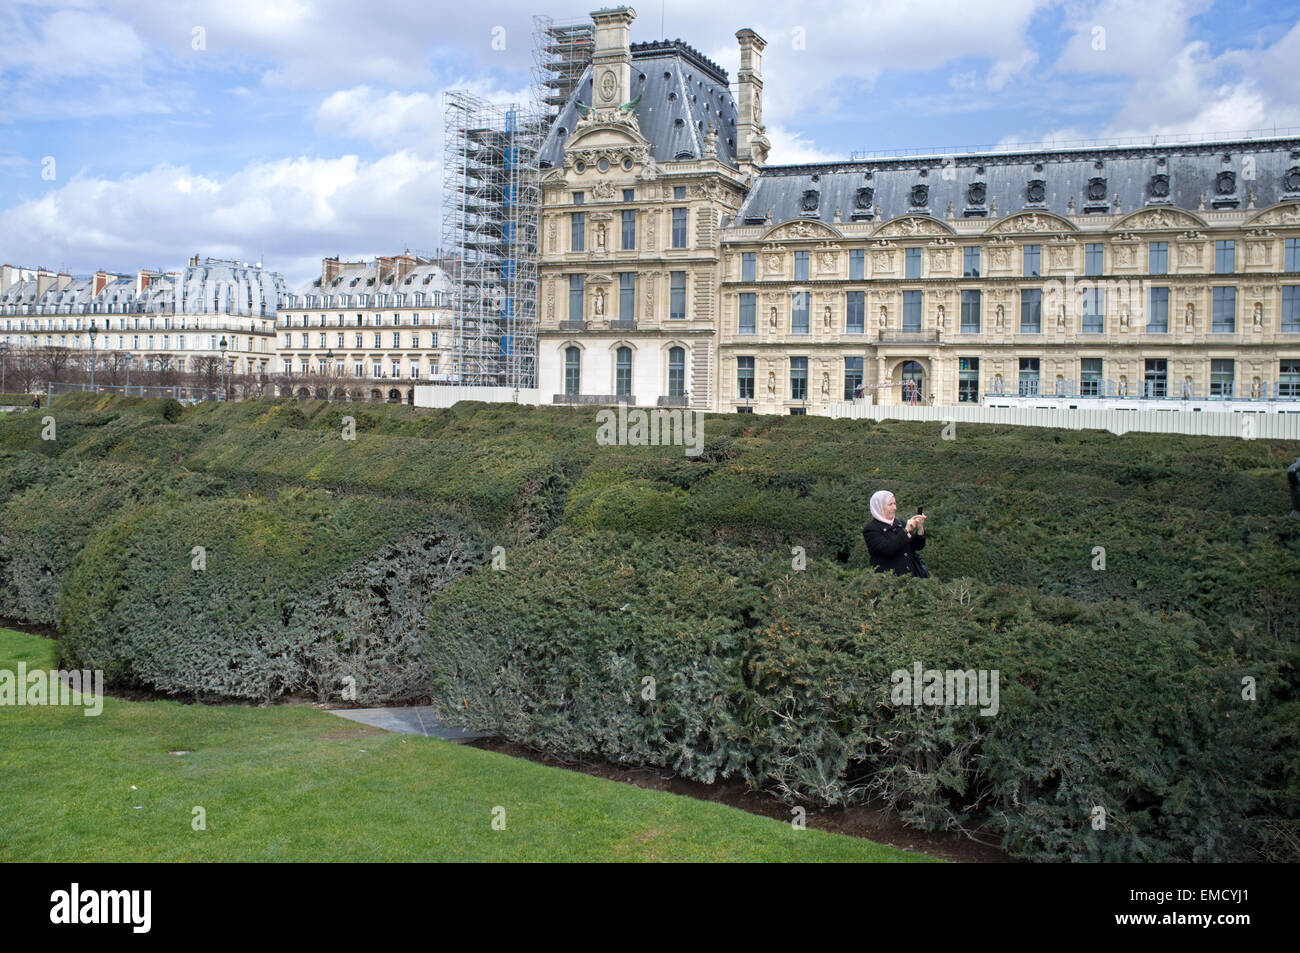 Une femme prend une photo dans le jardin des Tuileries à Paris Banque D'Images